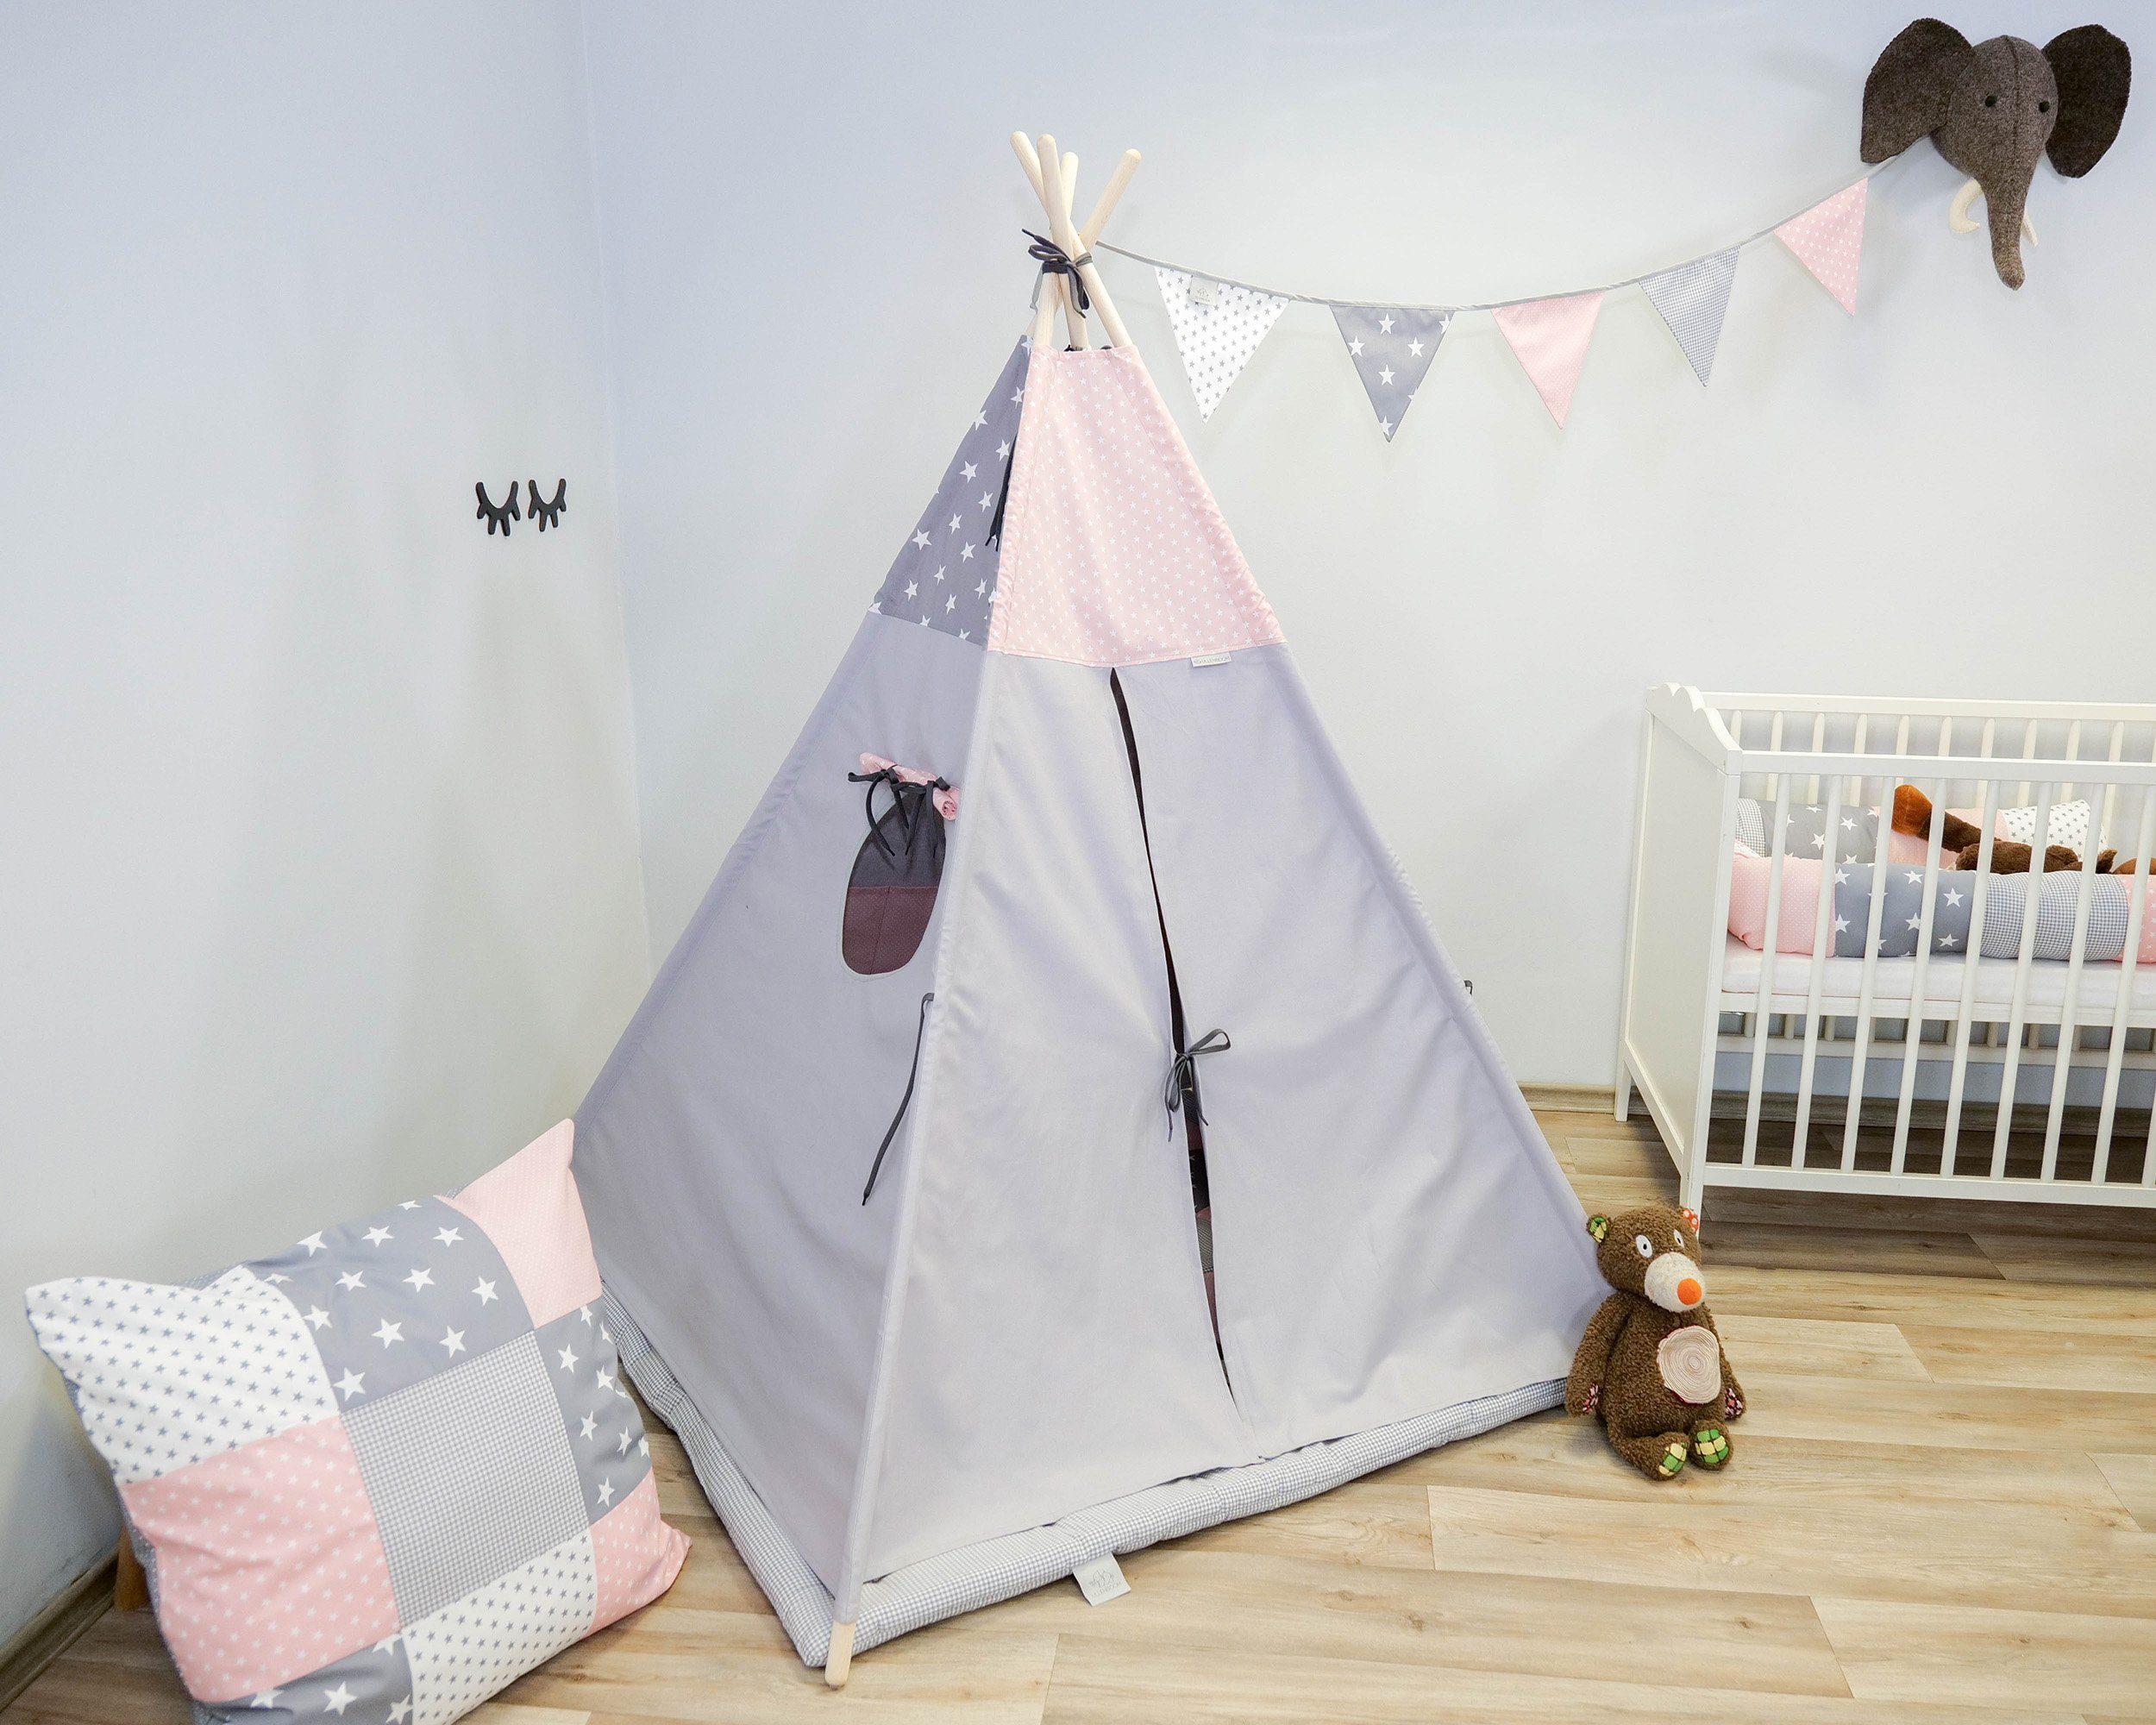 ULLENBOOM ® Spielzelt Tipi-Zelt für Kinder mit Krabbeldecke und  Wimpelkette, Rosa Grau Spielzelt für das Kinderzimmer, Mit Bodenmatte,  Indoor & Outdoor geeignet